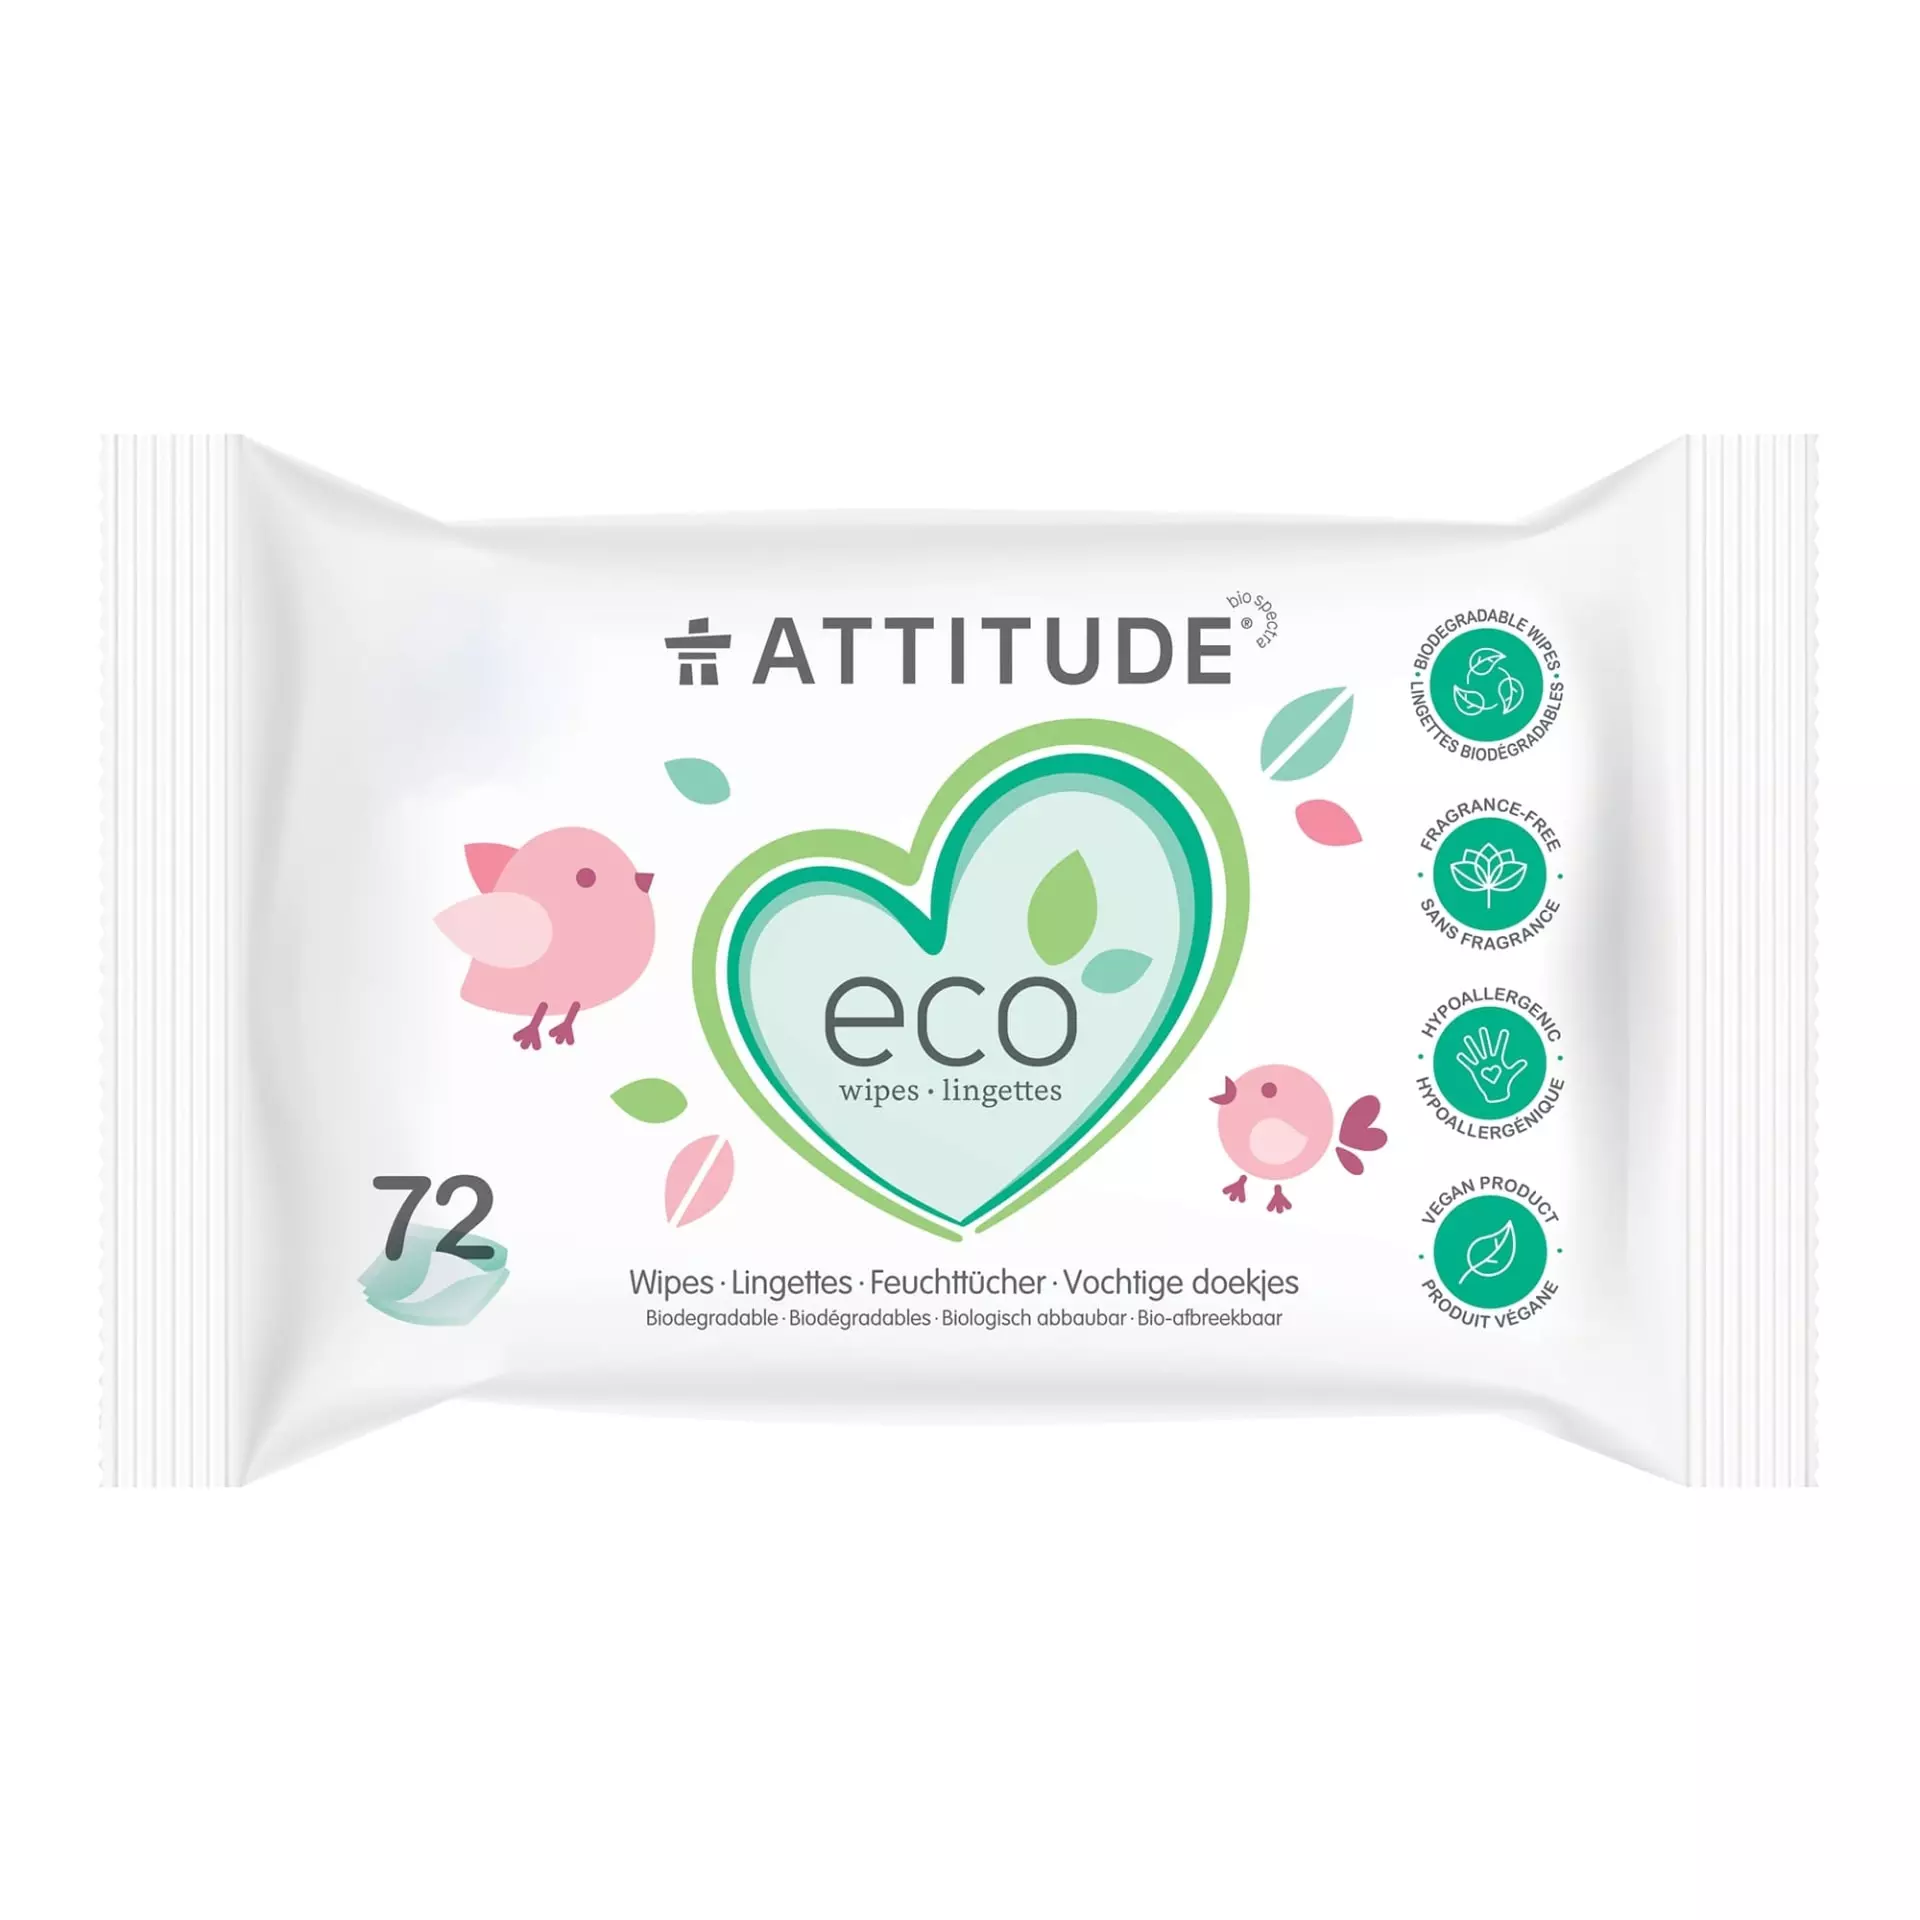 Attitude Eco Wipes – Lingettes